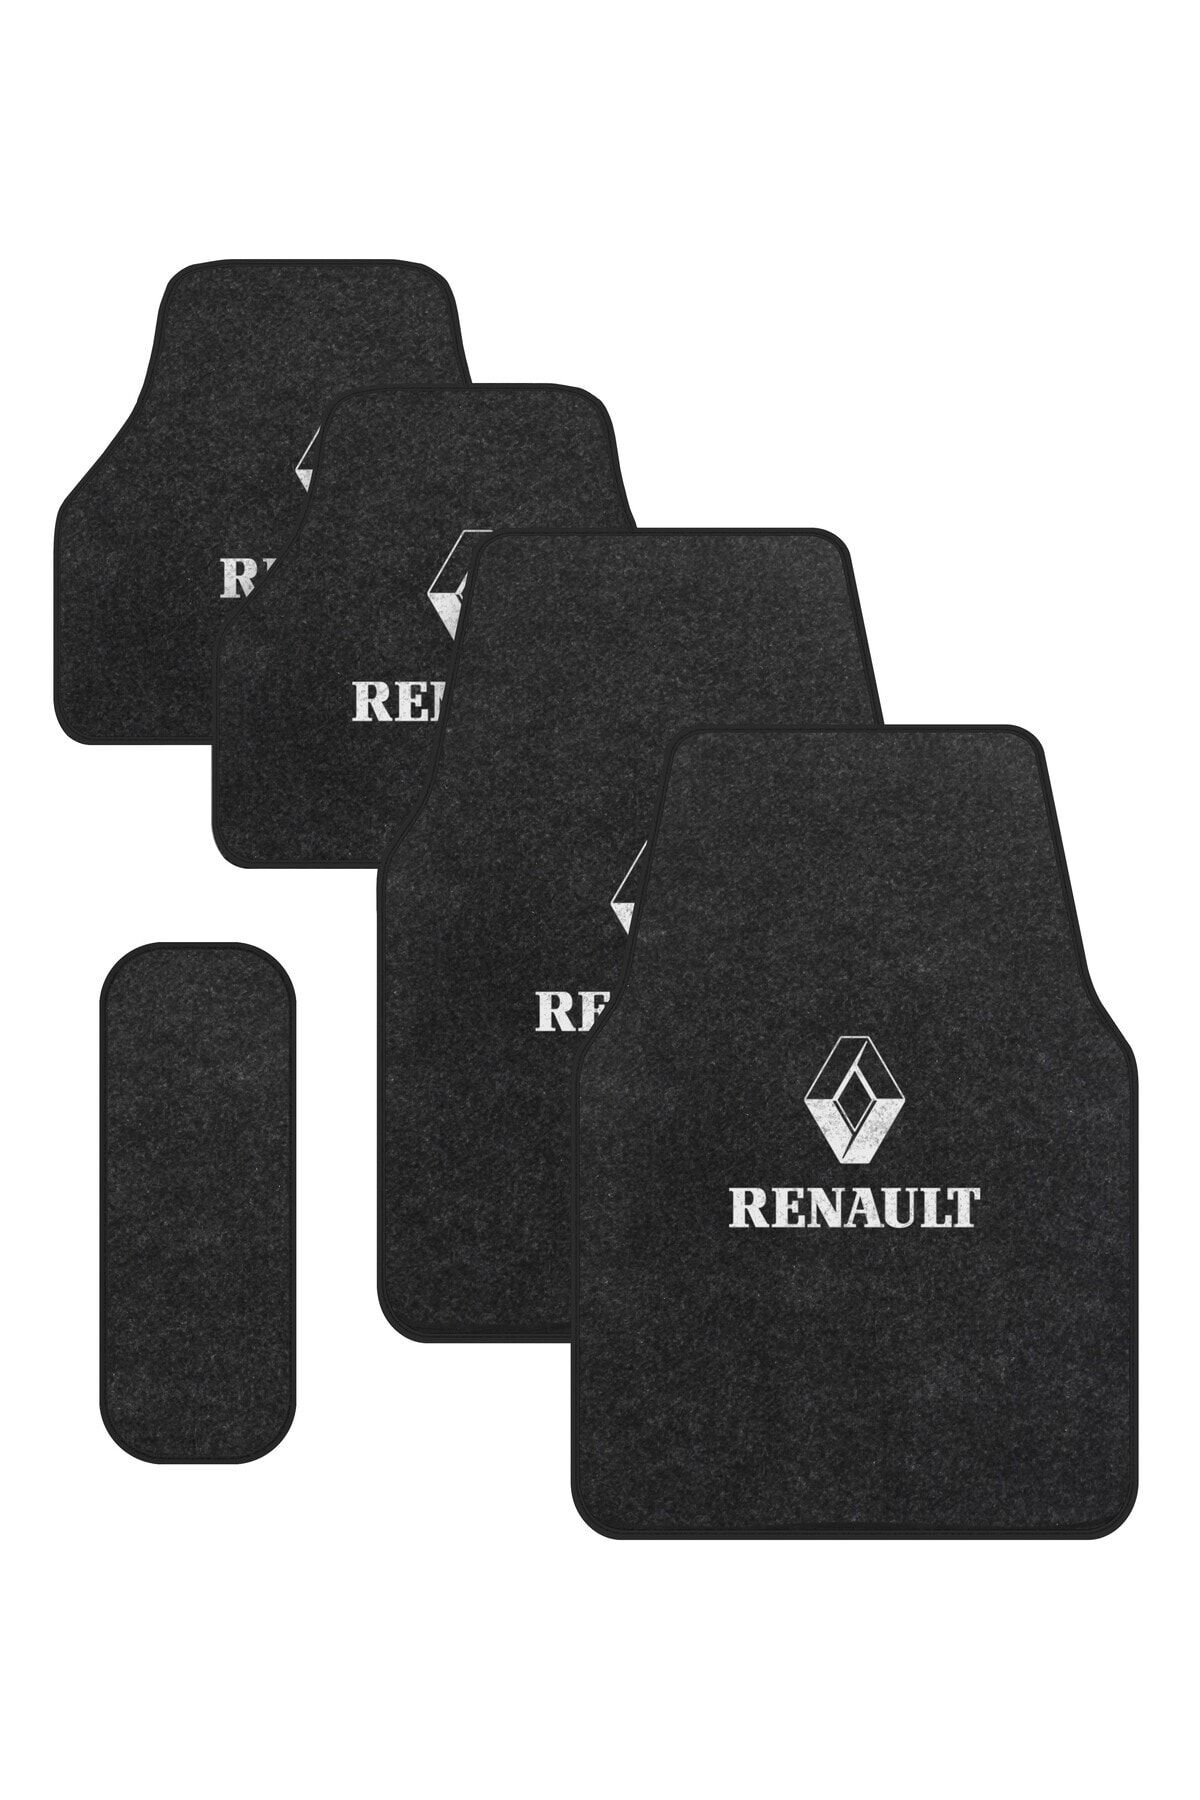 ototuningmerkezi Renault Füme Halı Paspas Takımı (Siyah Biyeli)-Oto Halıflex Paspas